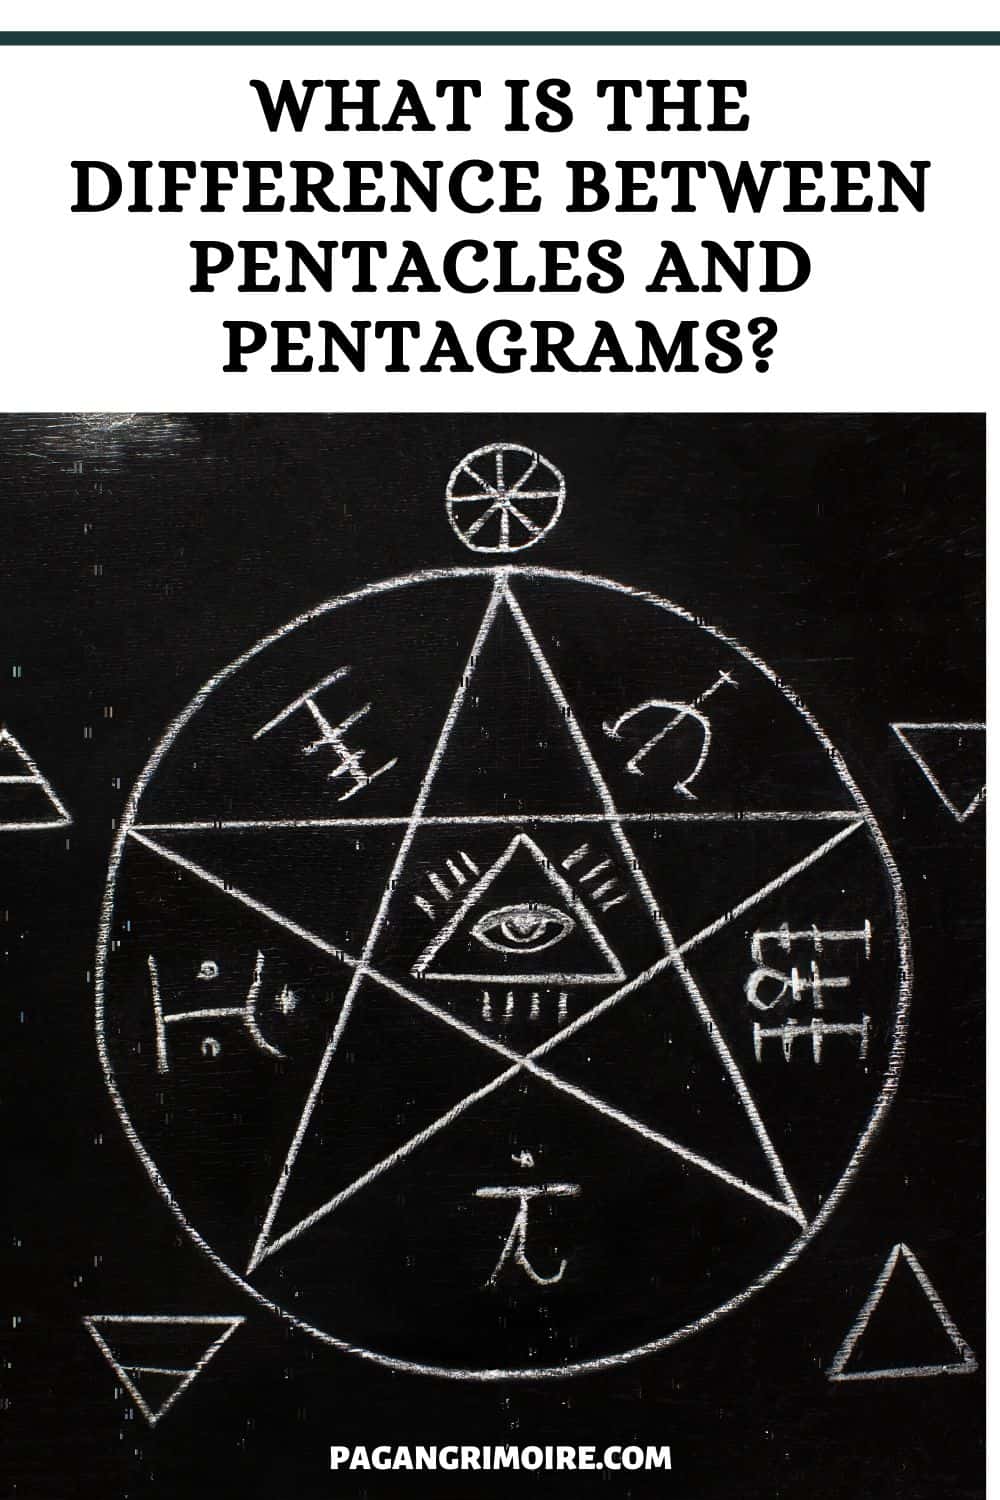 Pentagram vs Pentacle